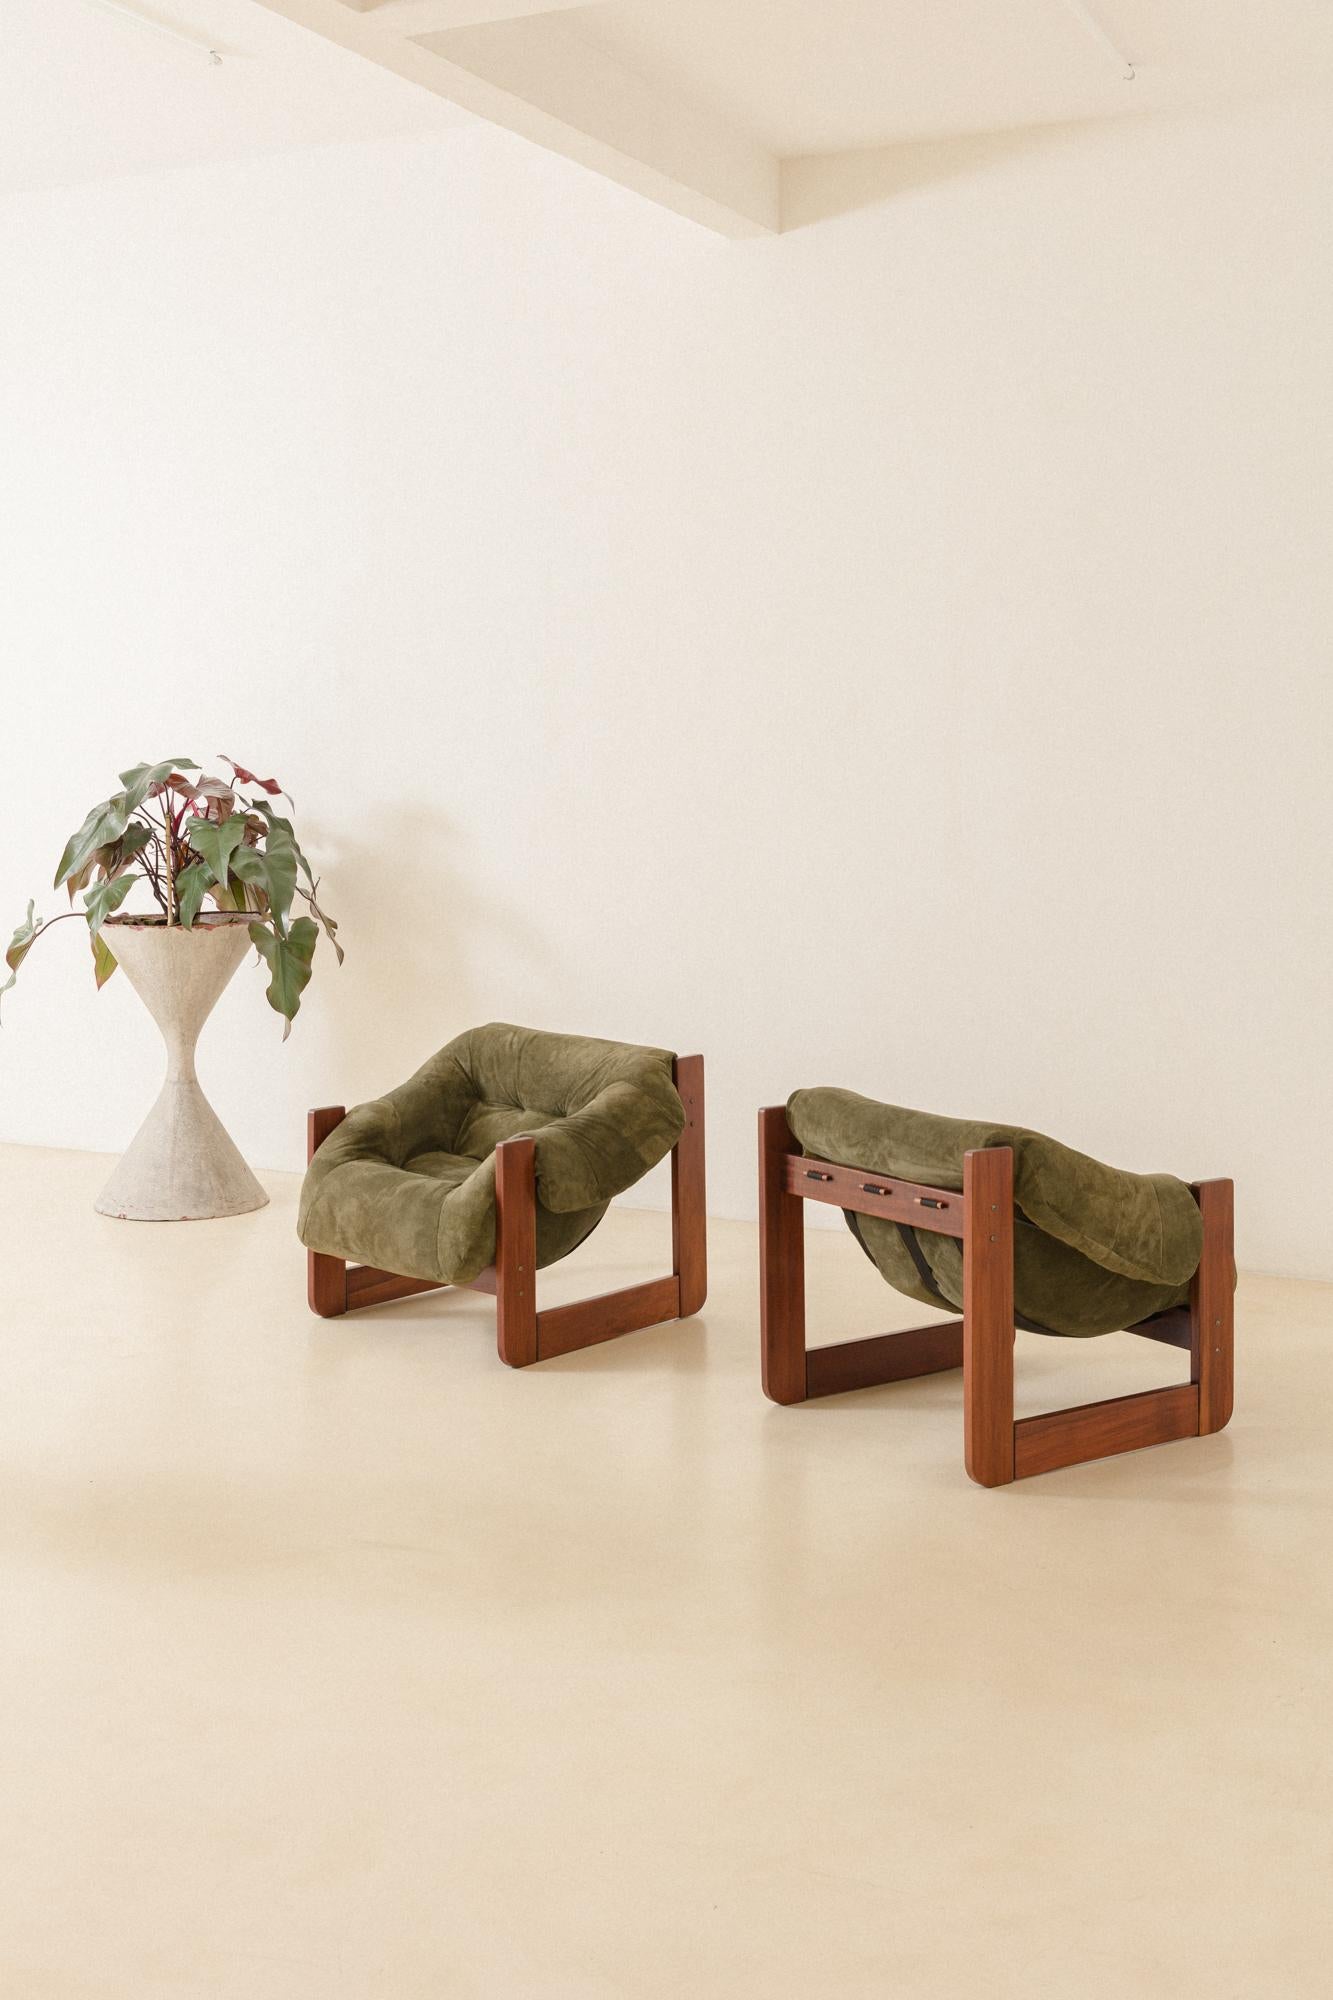 Dans ses conceptions, Percival Lafer a recherché l'ergonomie et le confort. Cette paire de chaises longues MP-97 de Percival Lafer se compose d'une structure en bois massif et d'une assise en mousse libre d'une seule pièce. Son design et sa